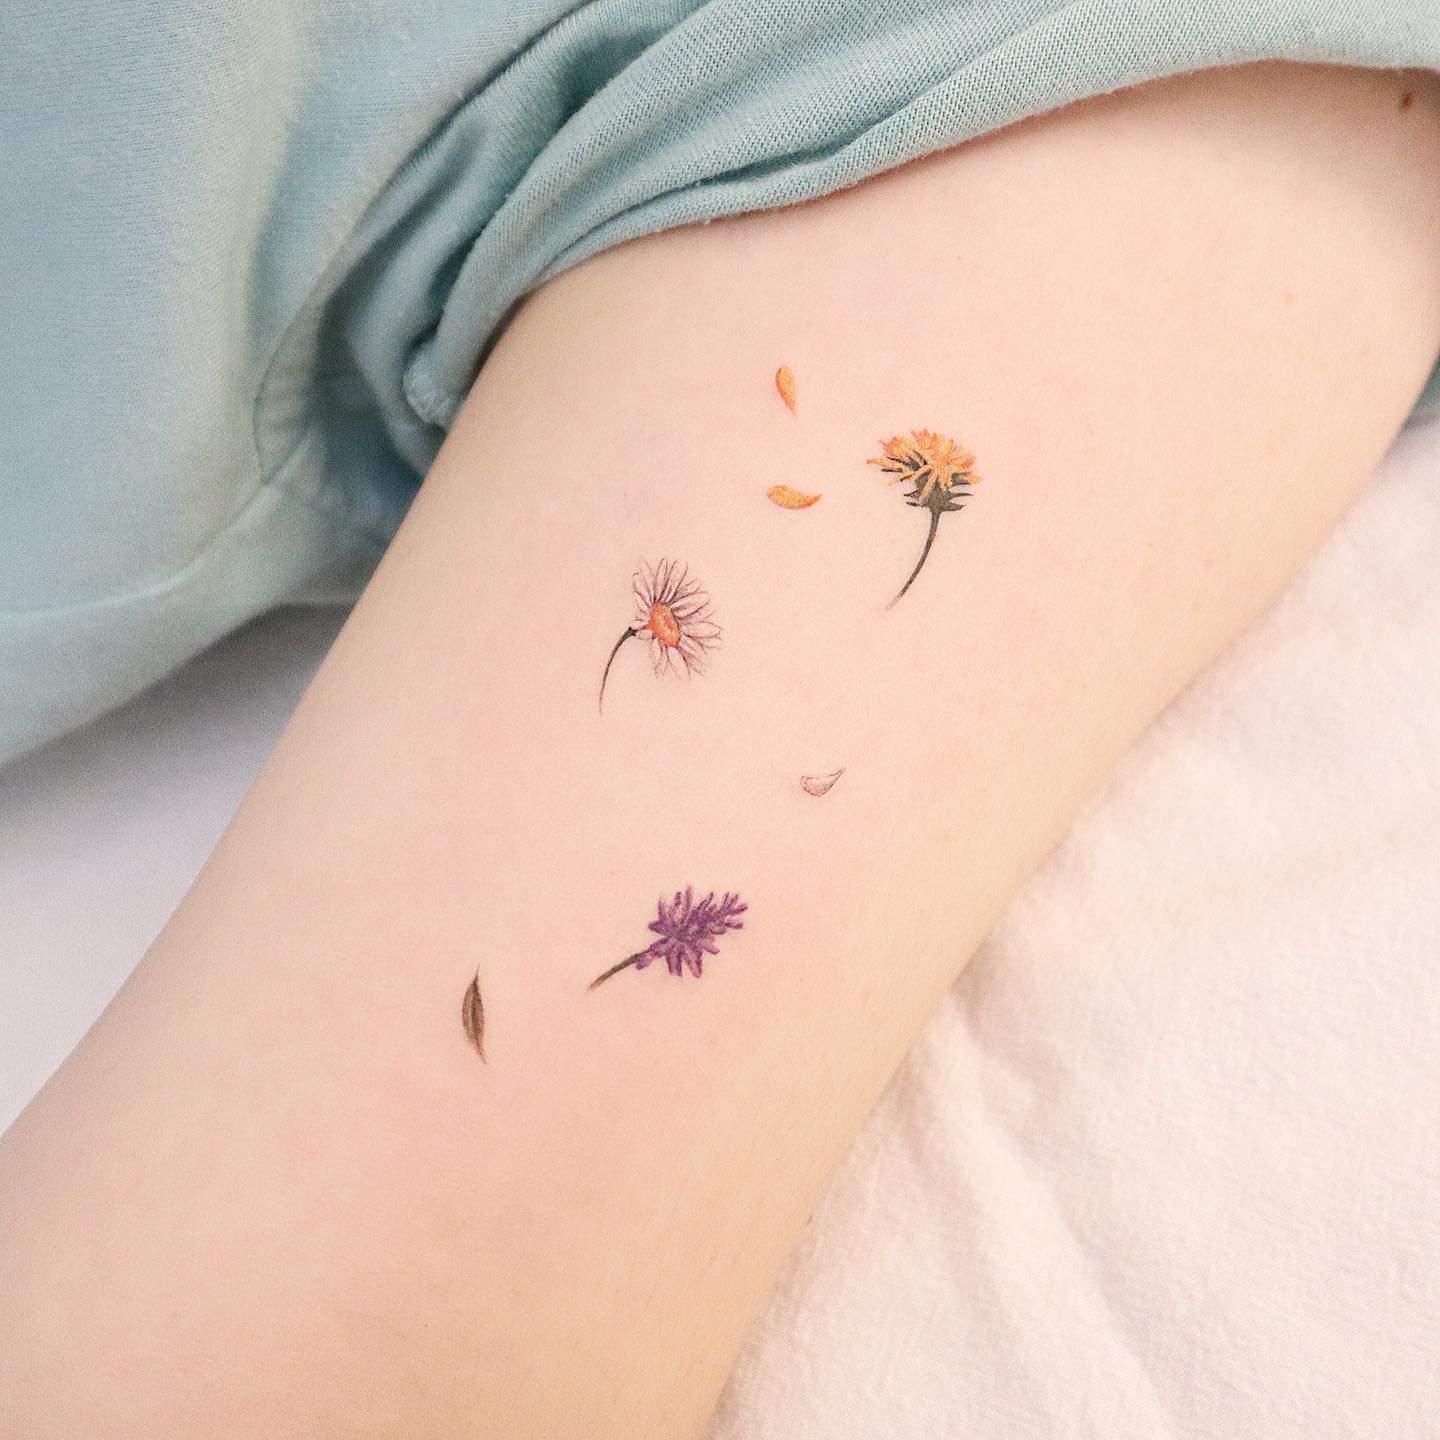 Daisy tattoo by suryun.tt